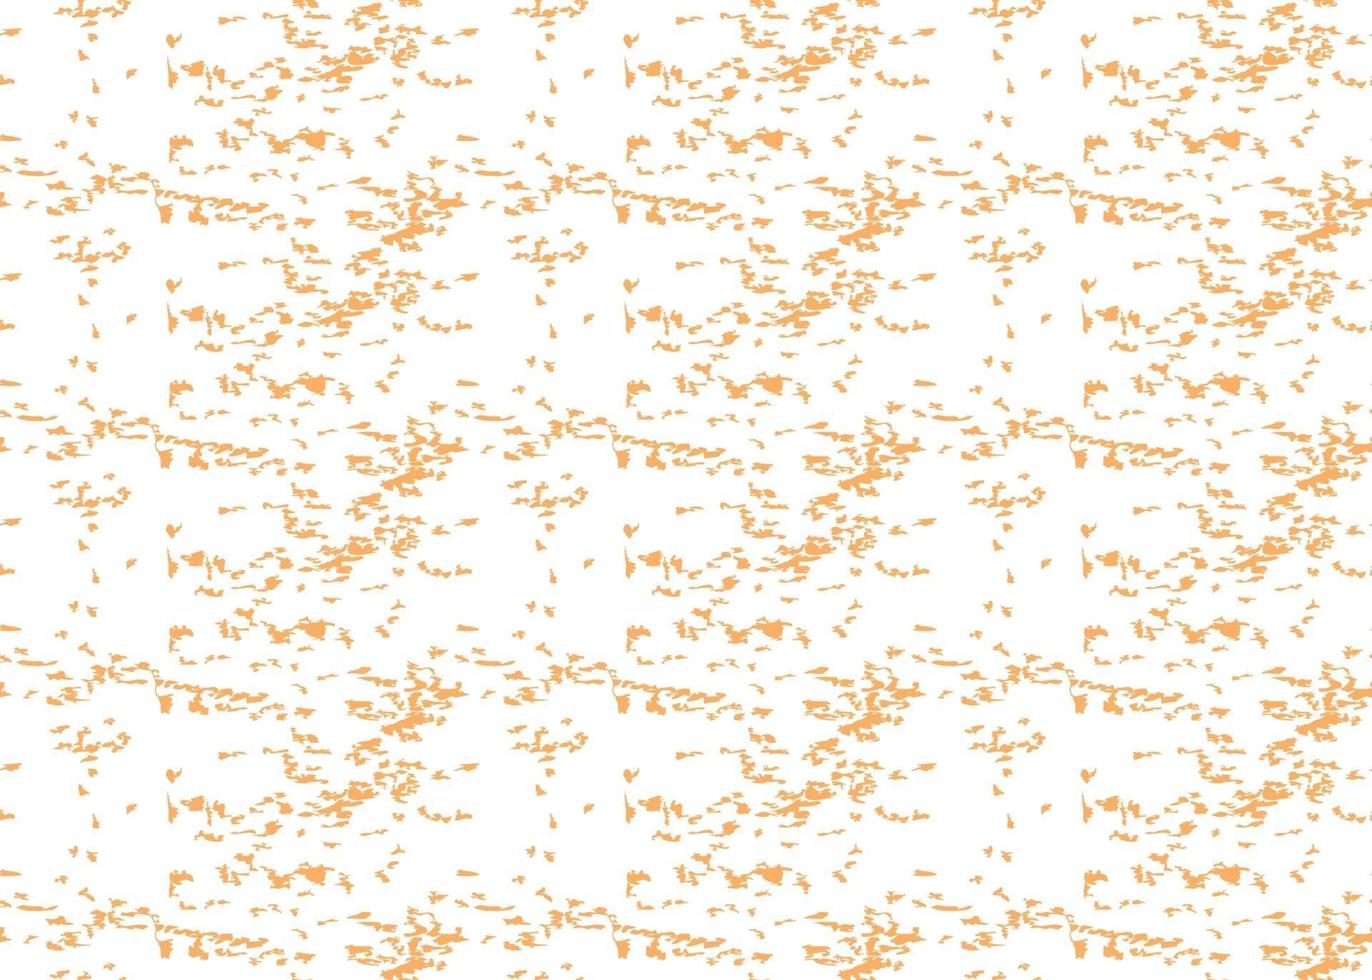 Vektor Textur Hintergrund, nahtloses Muster. handgezeichnete, orange, weiße Farben.